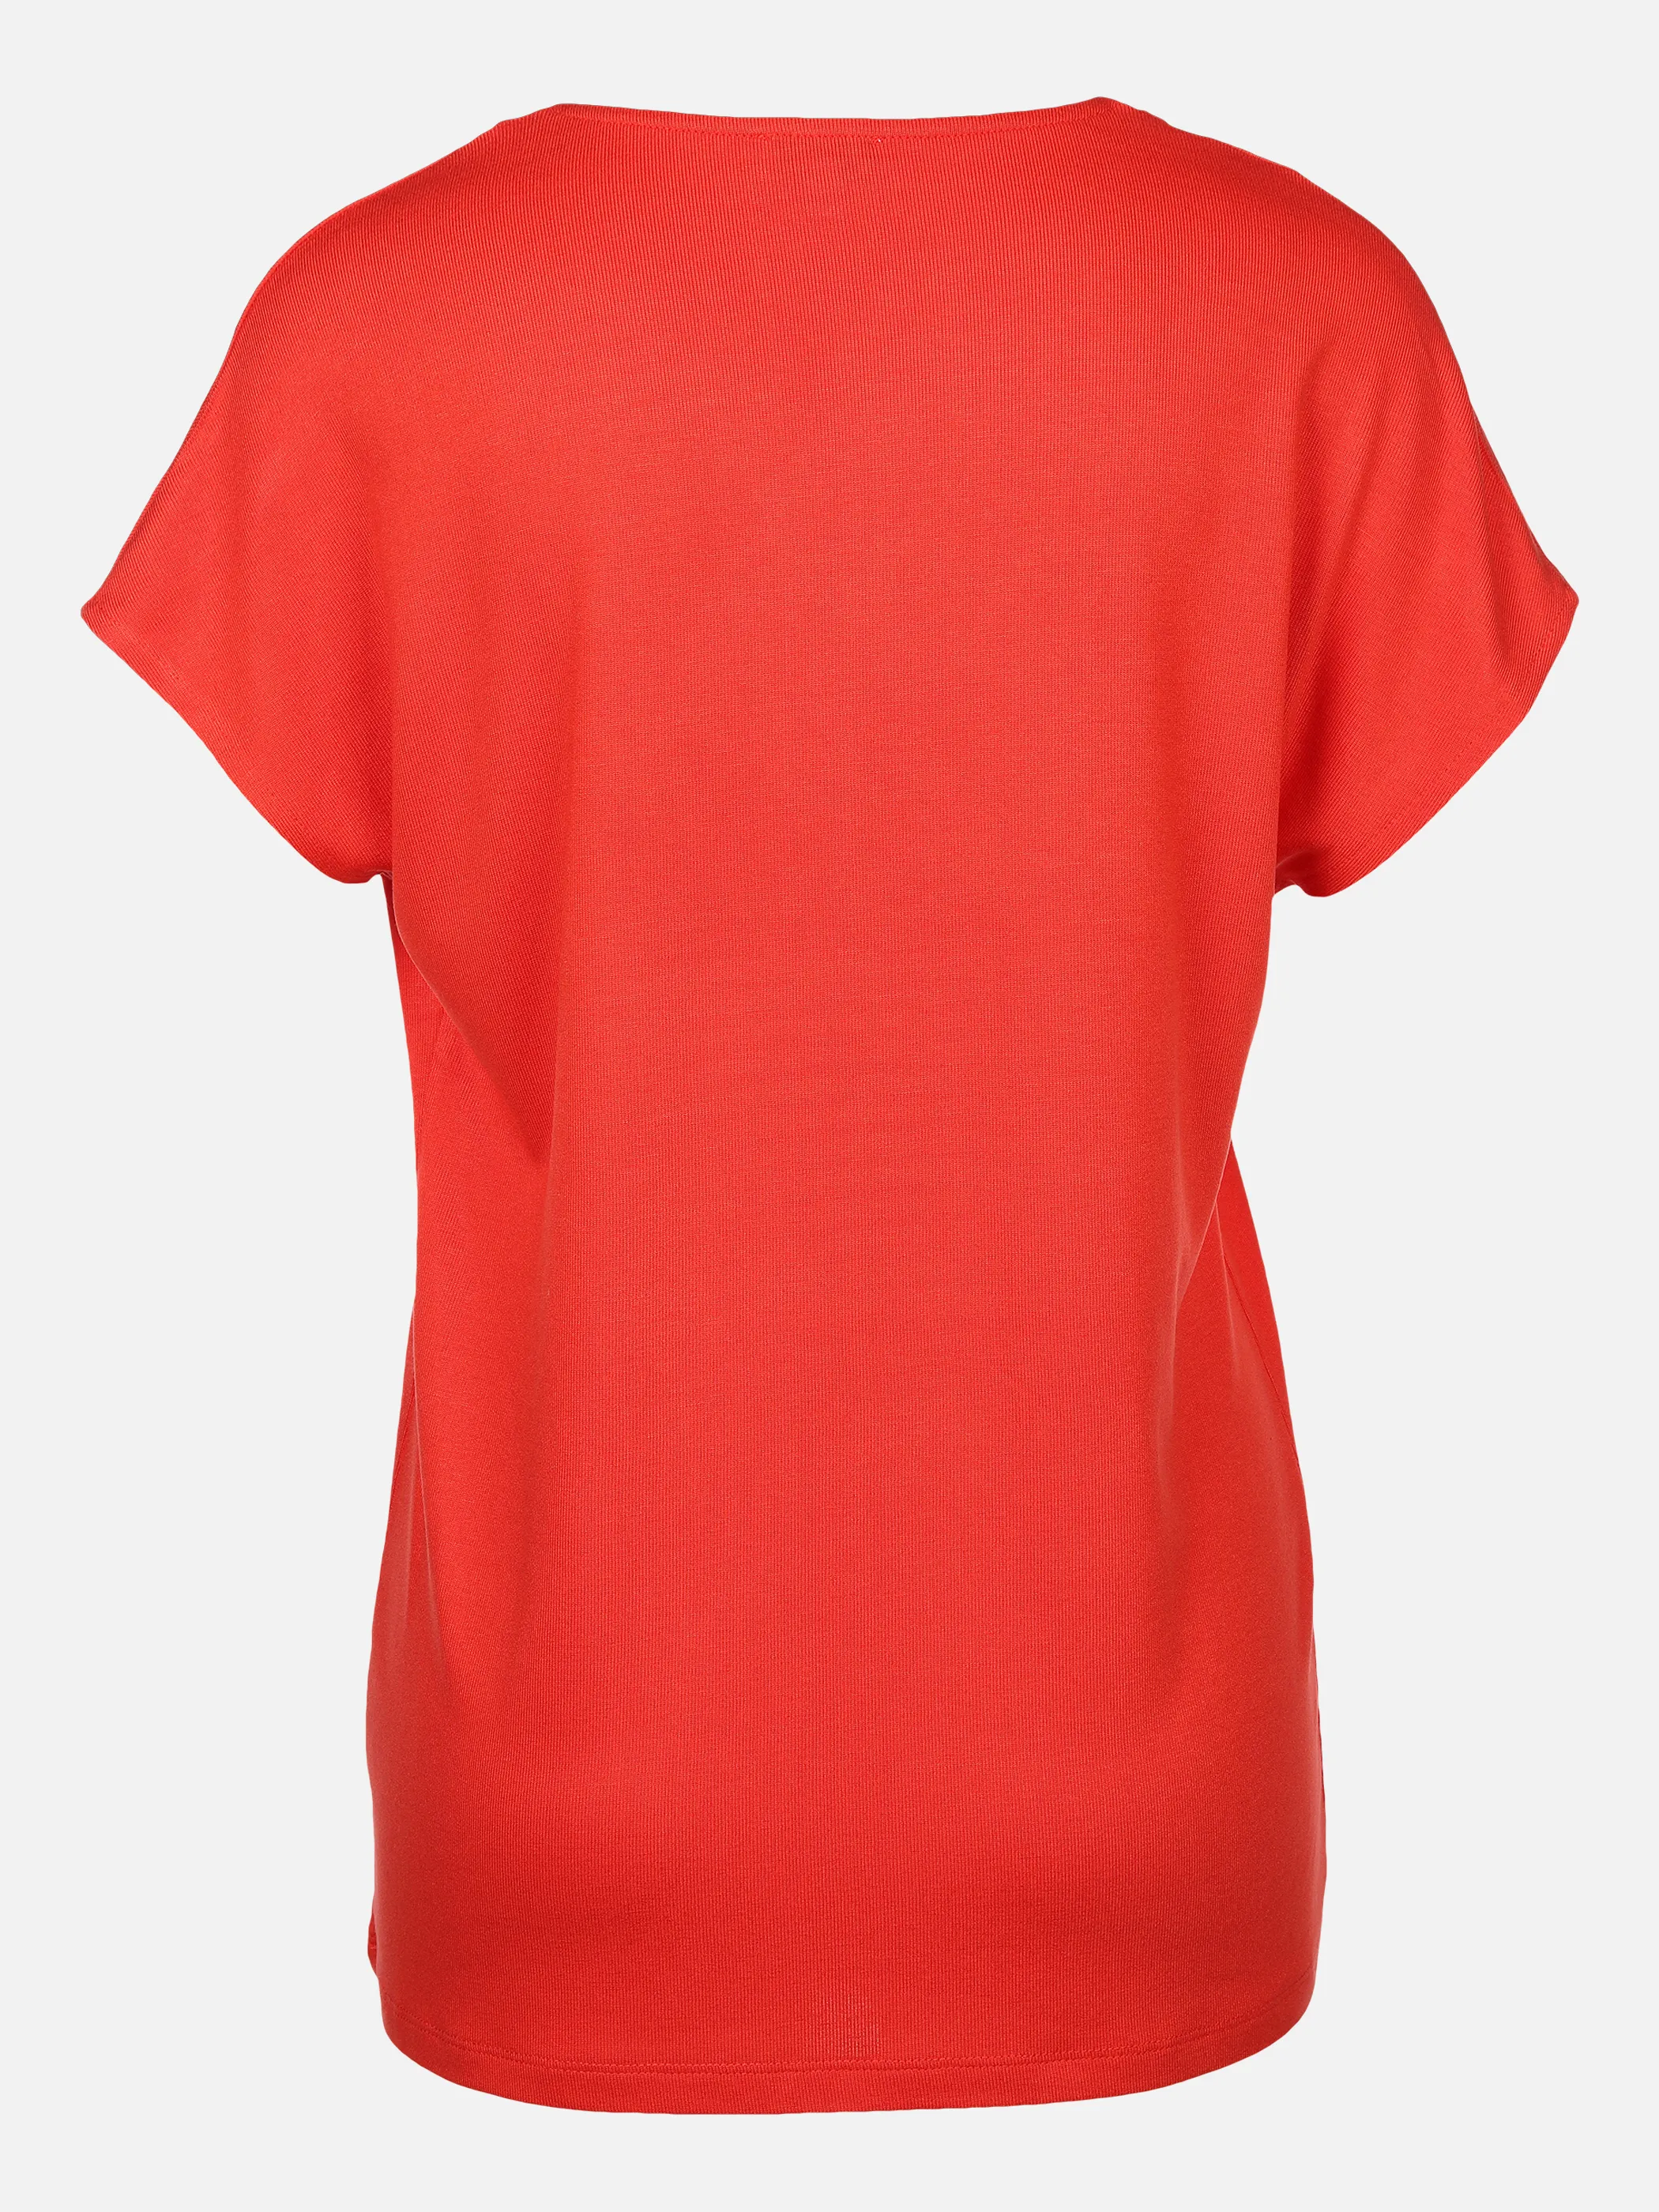 Lisa Tossa Da-T-Shirt m.V-Ausschnitt Rot 877642 FEUERROT 2